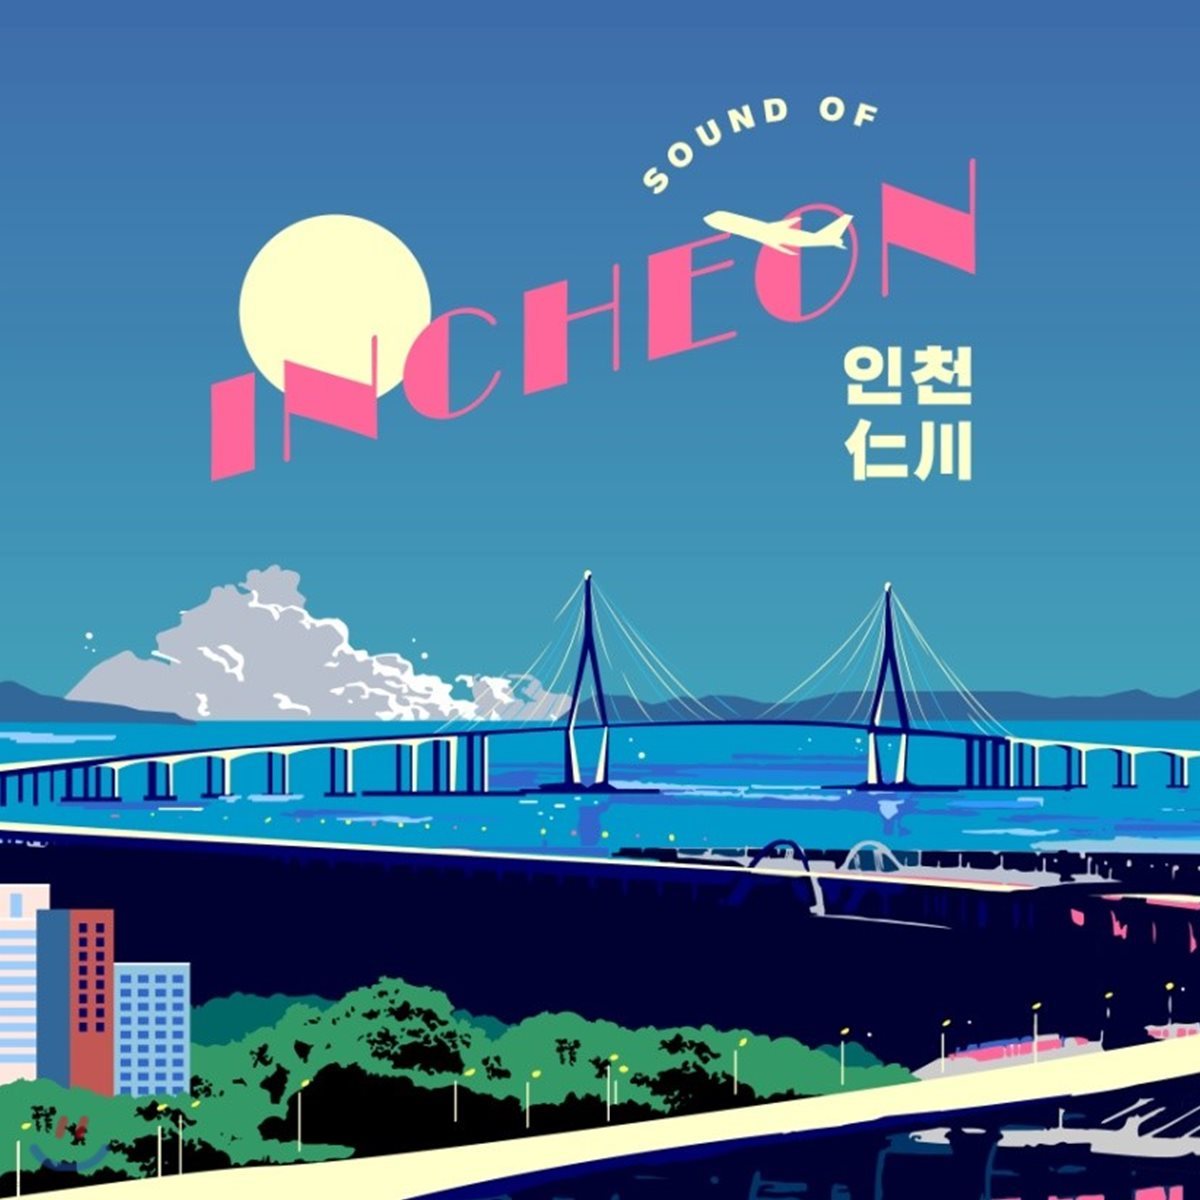 인천 - Sound of Incheon